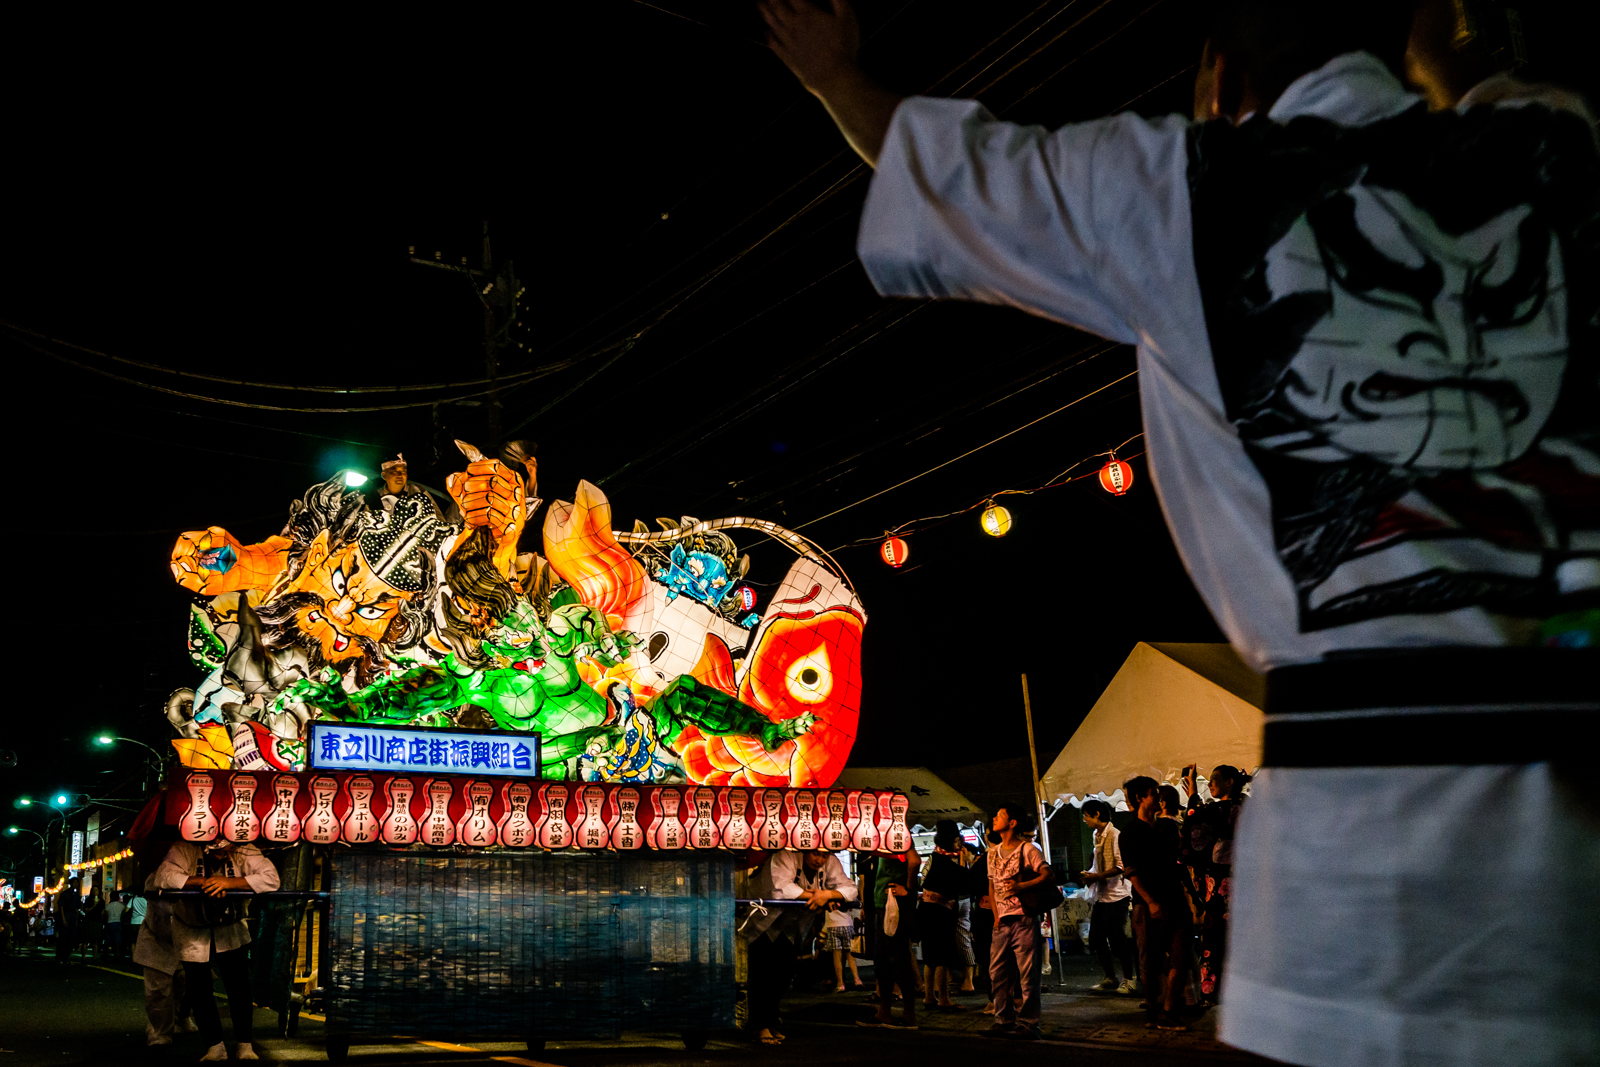 立川、ねぶた祭りの写真